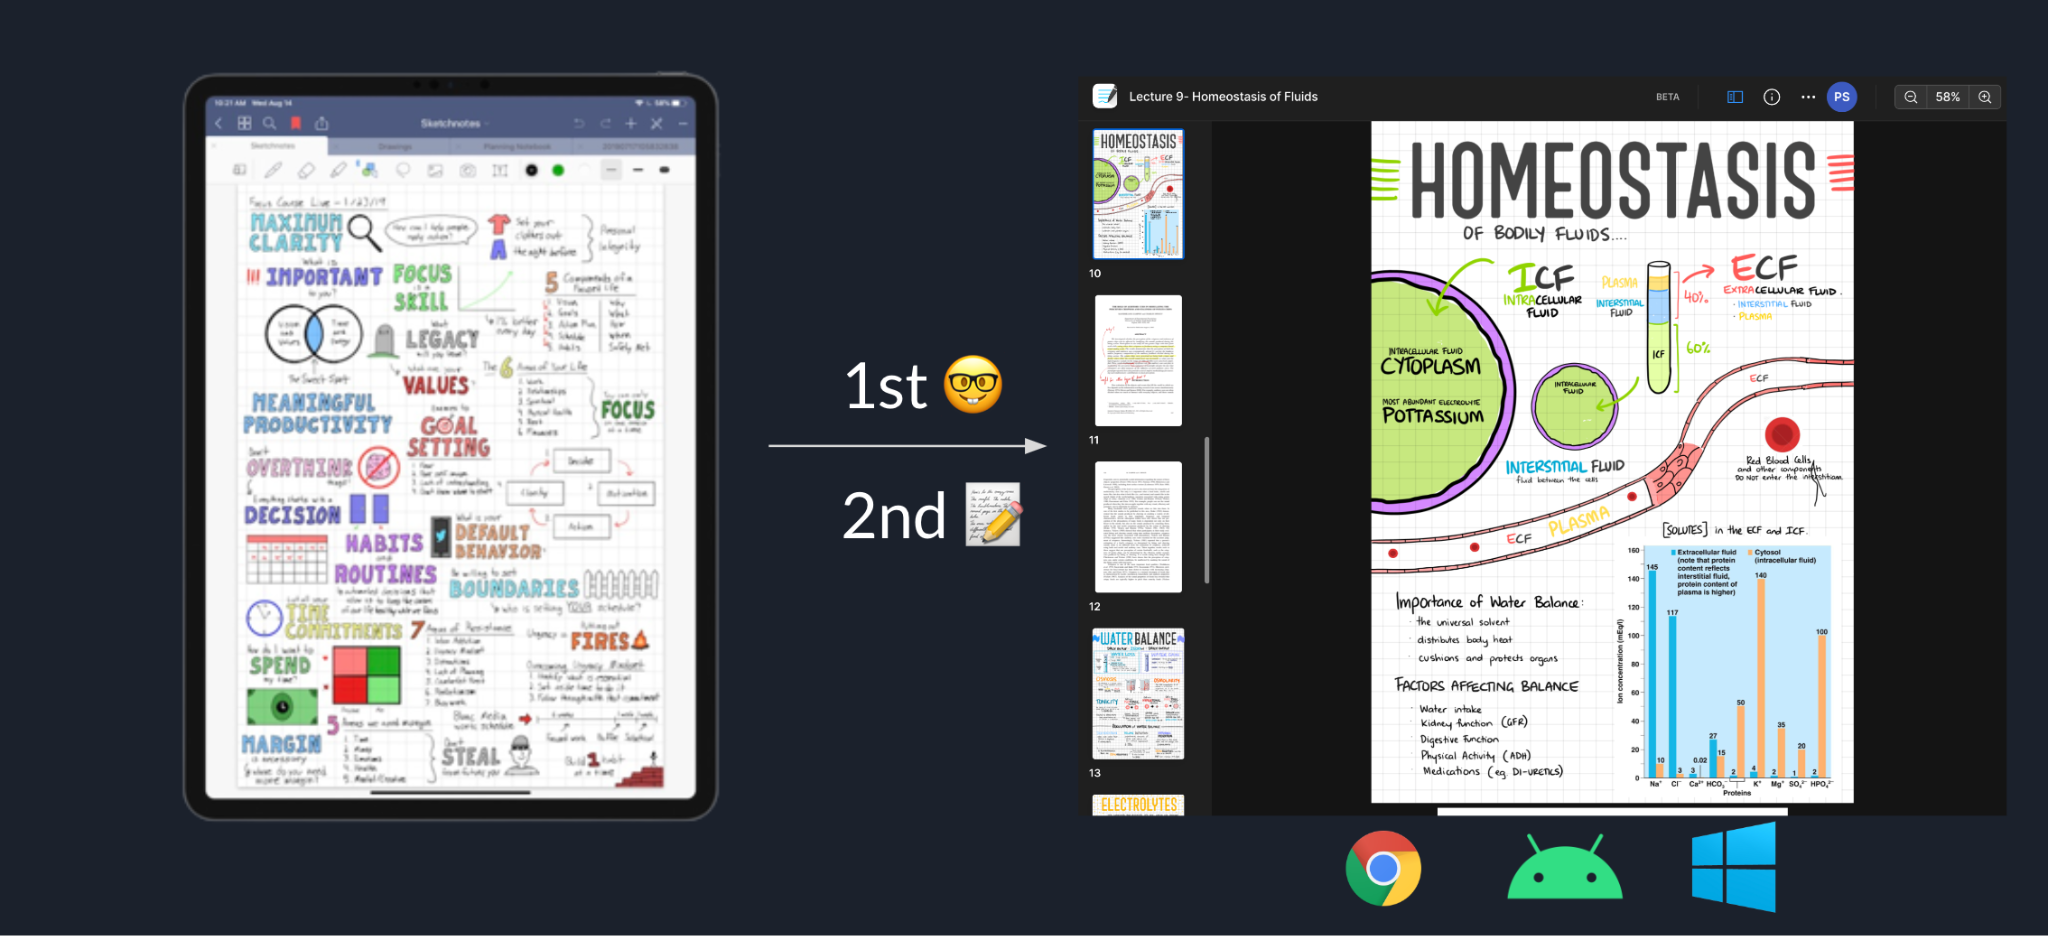 שני צילומי מסך של אפליקציה שמסמלים מעבר מקריאה בלבד למוצר המוצג במלואו.